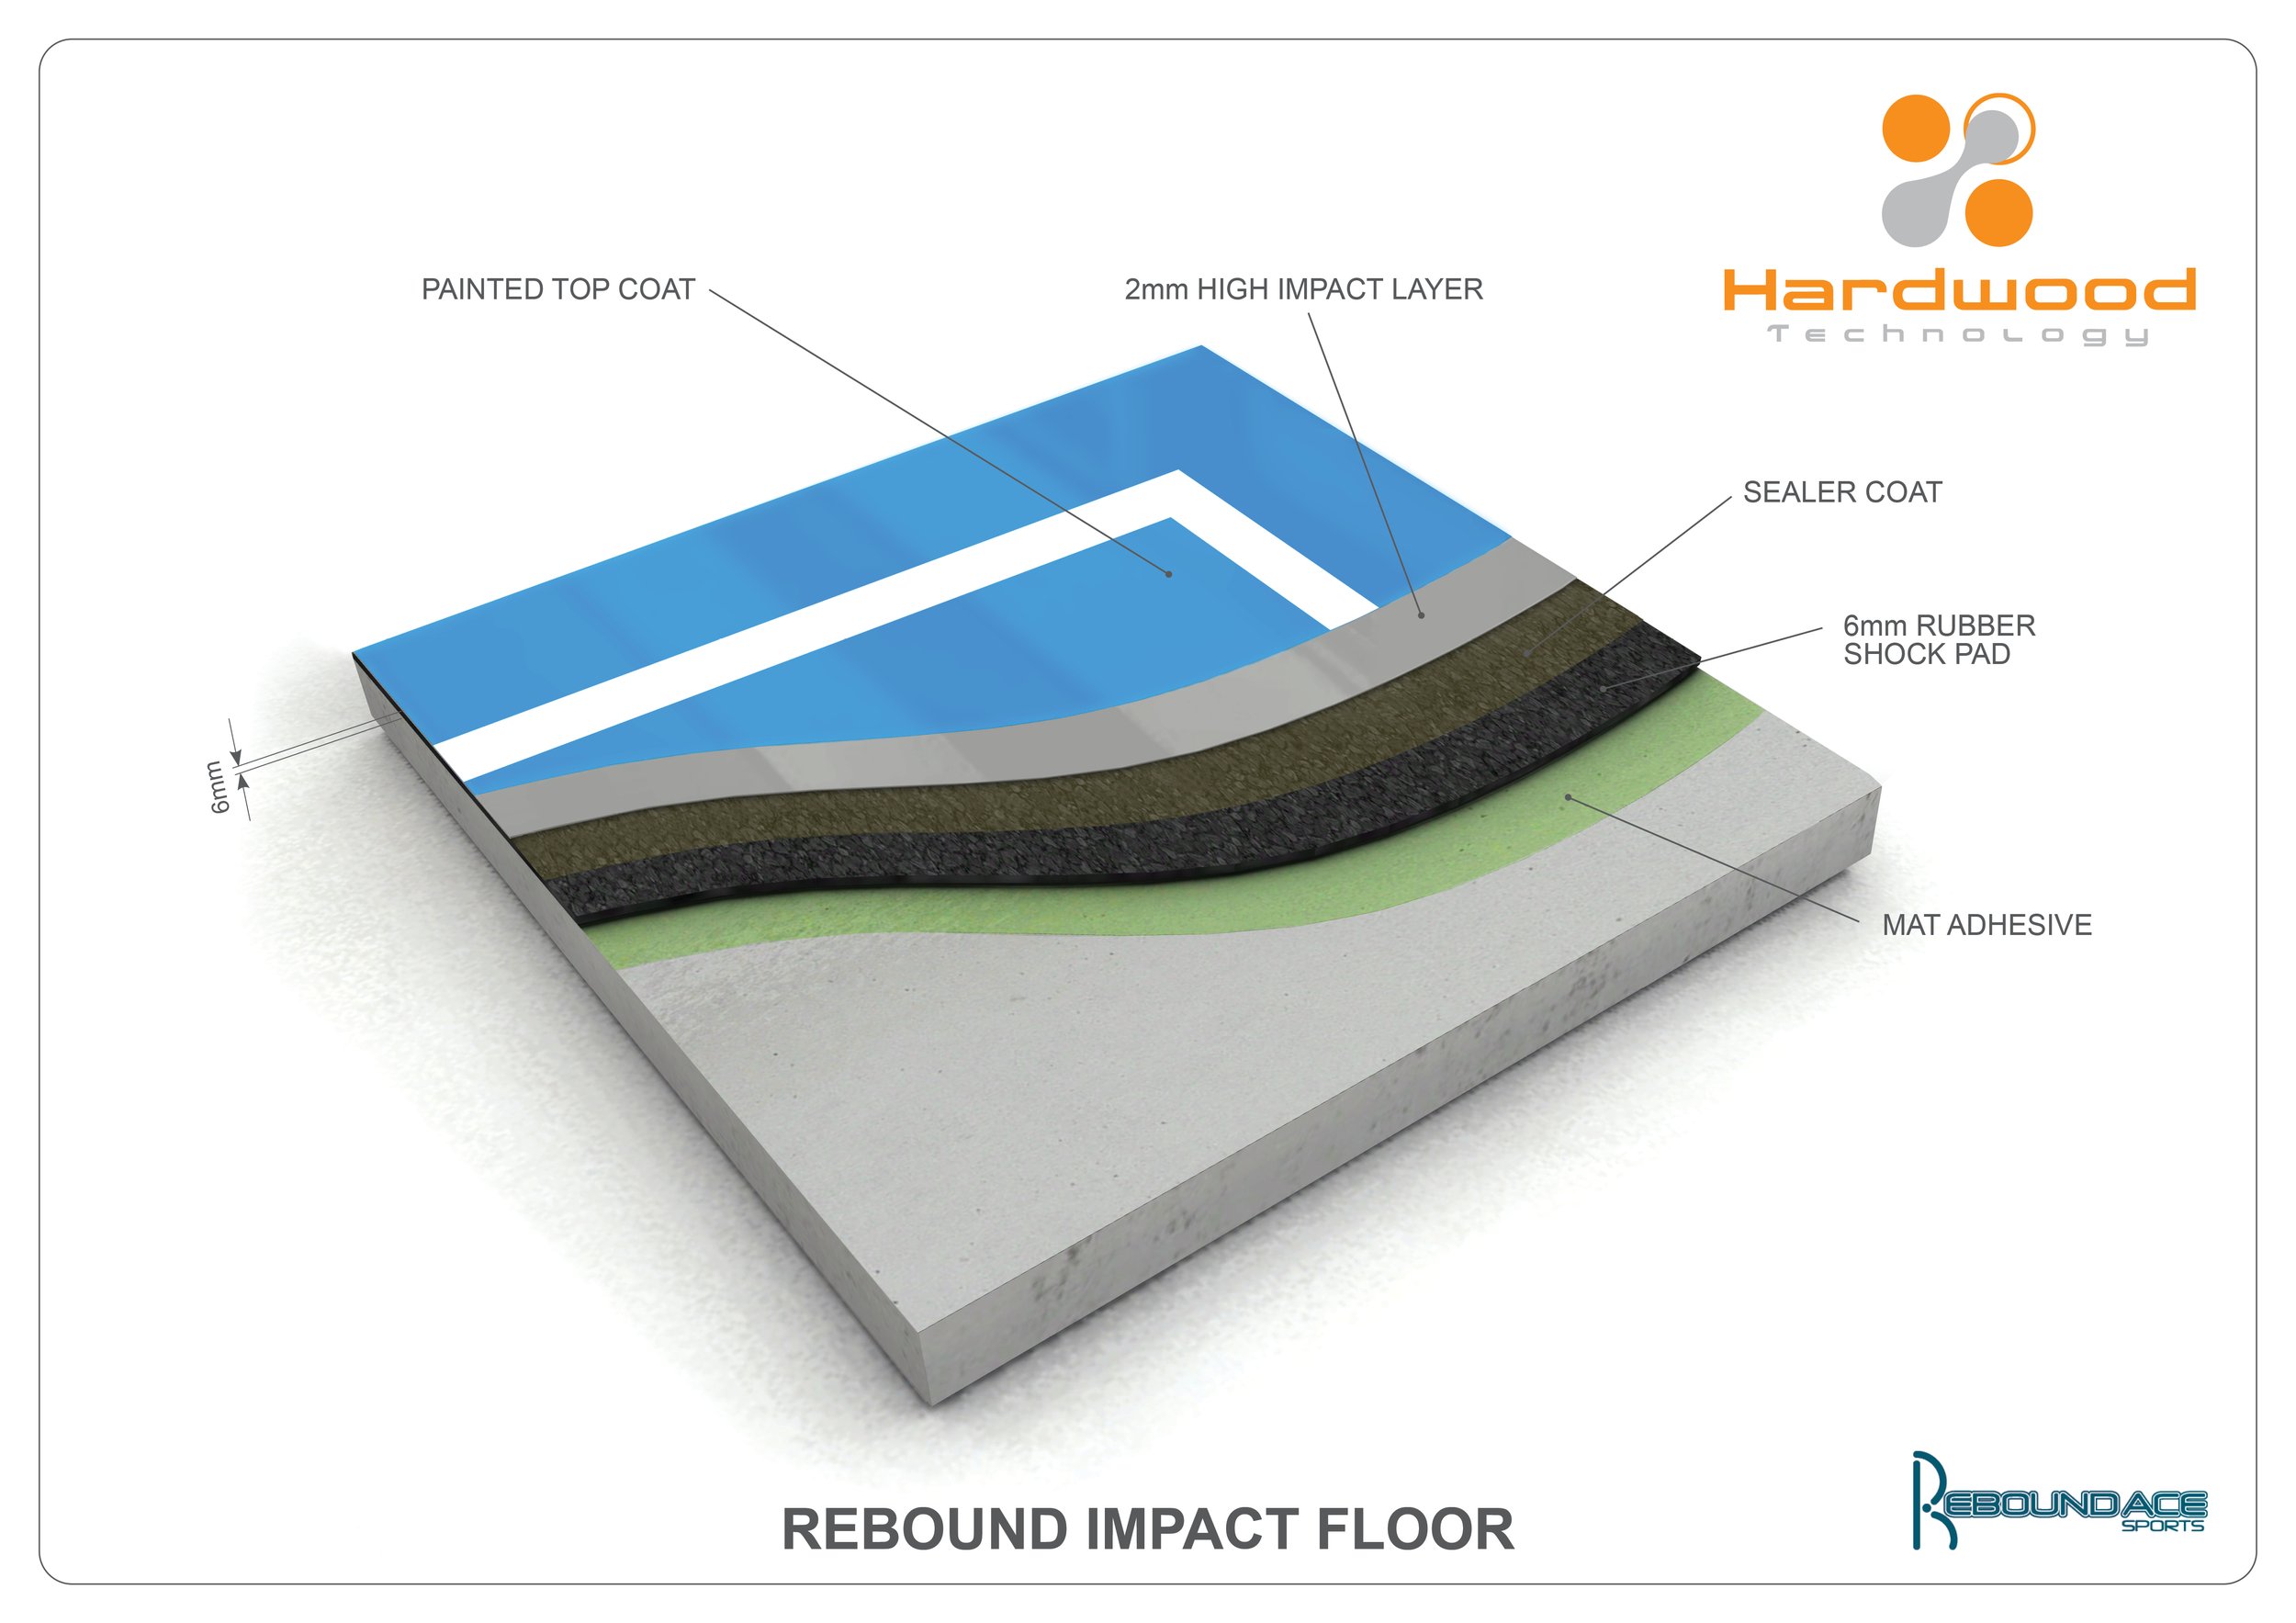 Hardwood Floors_rebound impact floor.jpg